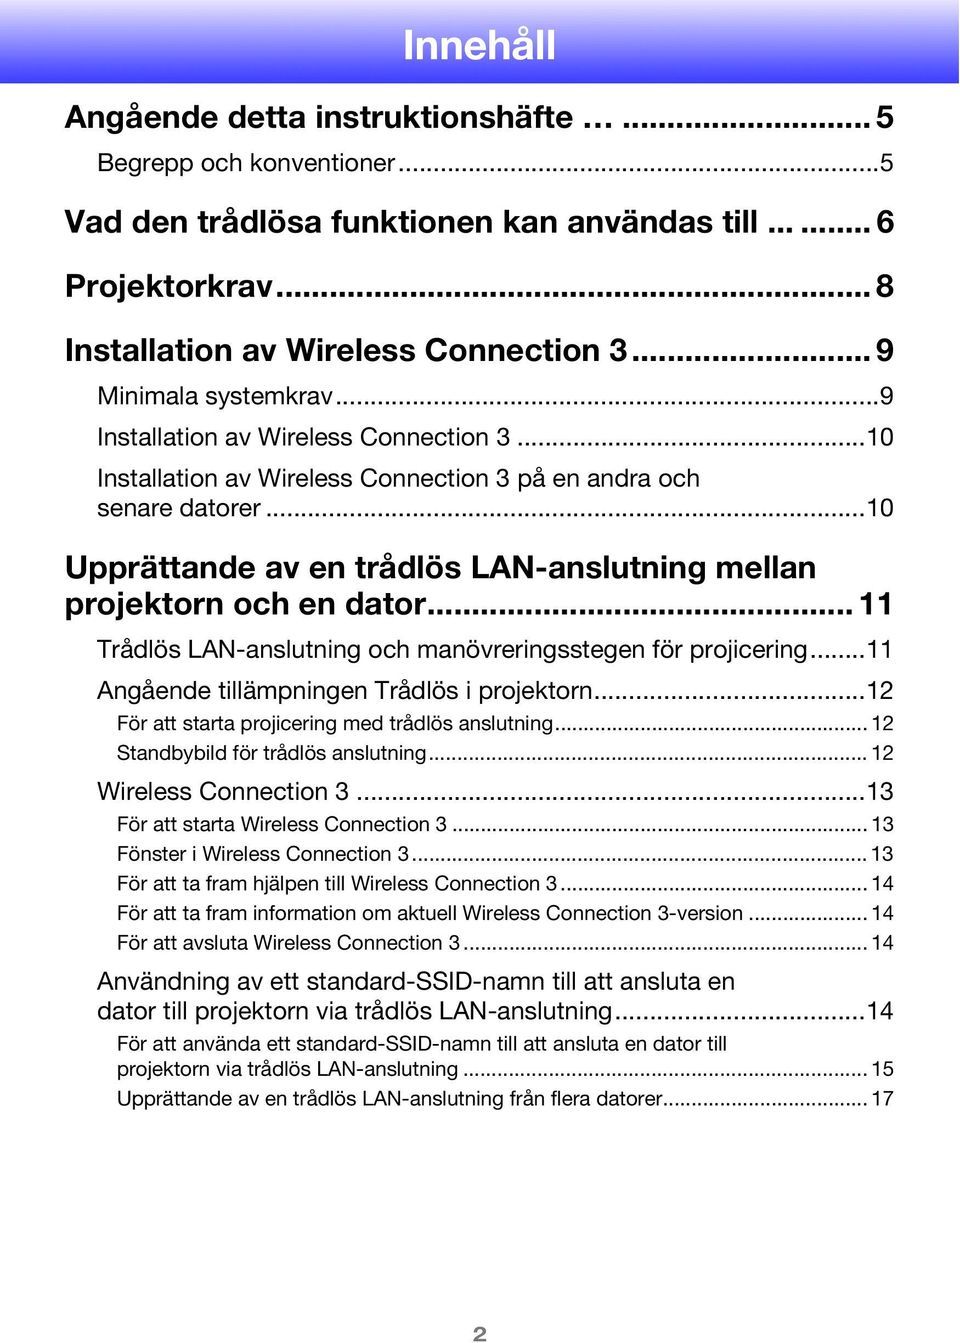 ..10 Upprättande av en trådlös LAN-anslutning mellan projektorn och en dator... 11 Trådlös LAN-anslutning och manövreringsstegen för projicering...11 Angående tillämpningen Trådlös i projektorn.